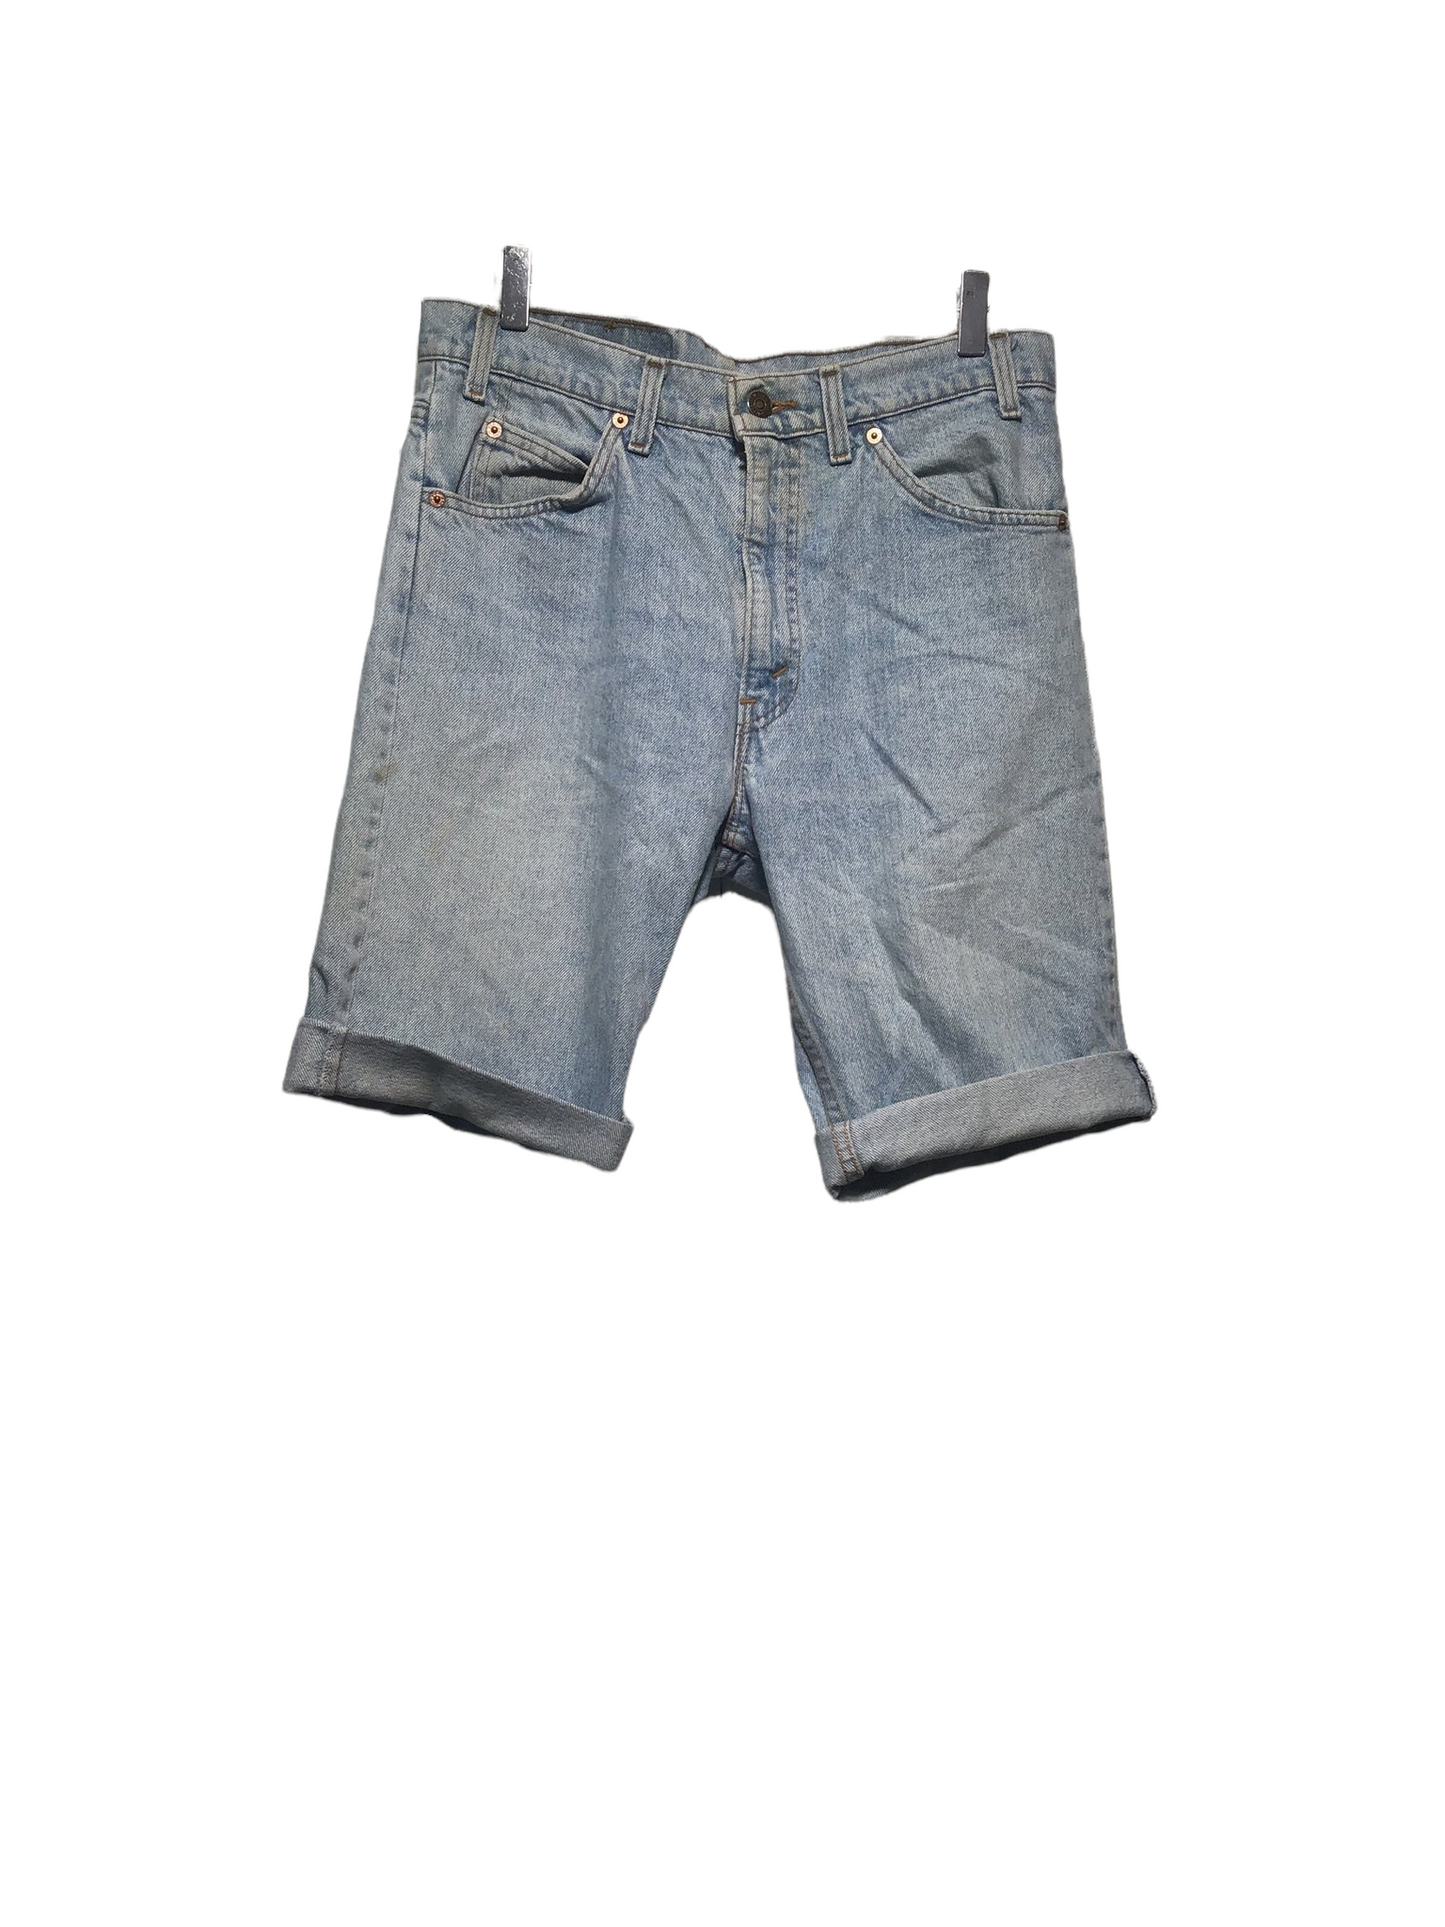 Levi Denim Shorts (Size 32" Waist)